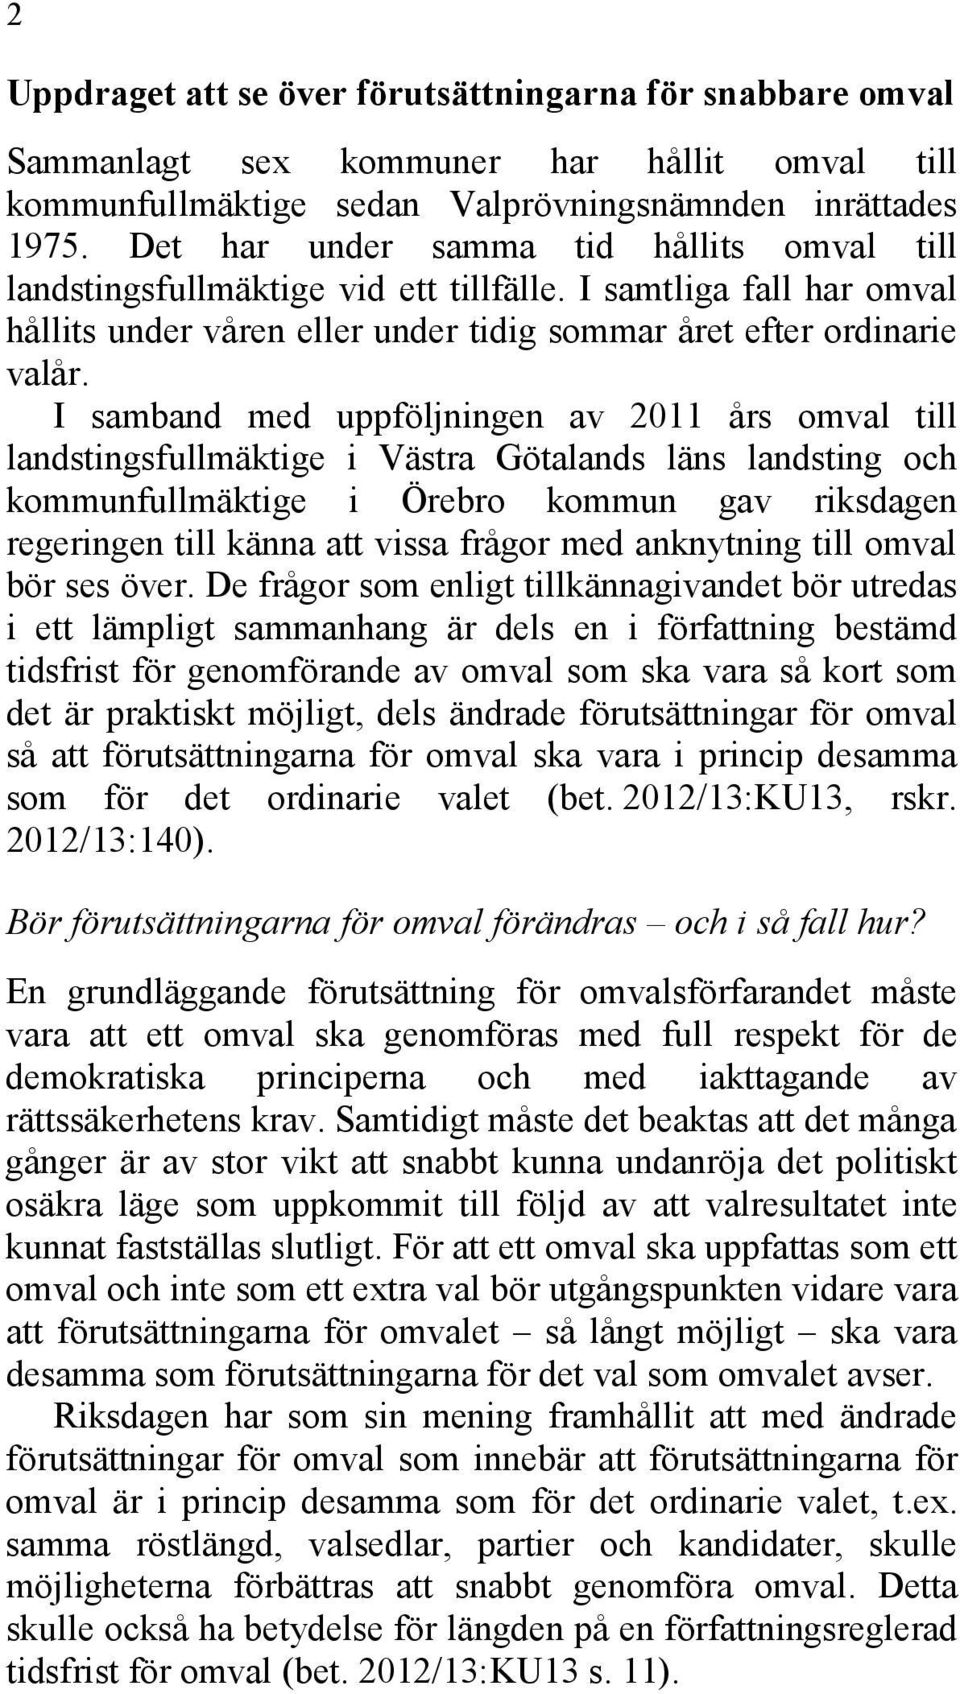 I samband med uppföljningen av 2011 års omval till landstingsfullmäktige i Västra Götalands läns landsting och kommunfullmäktige i Örebro kommun gav riksdagen regeringen till känna att vissa frågor